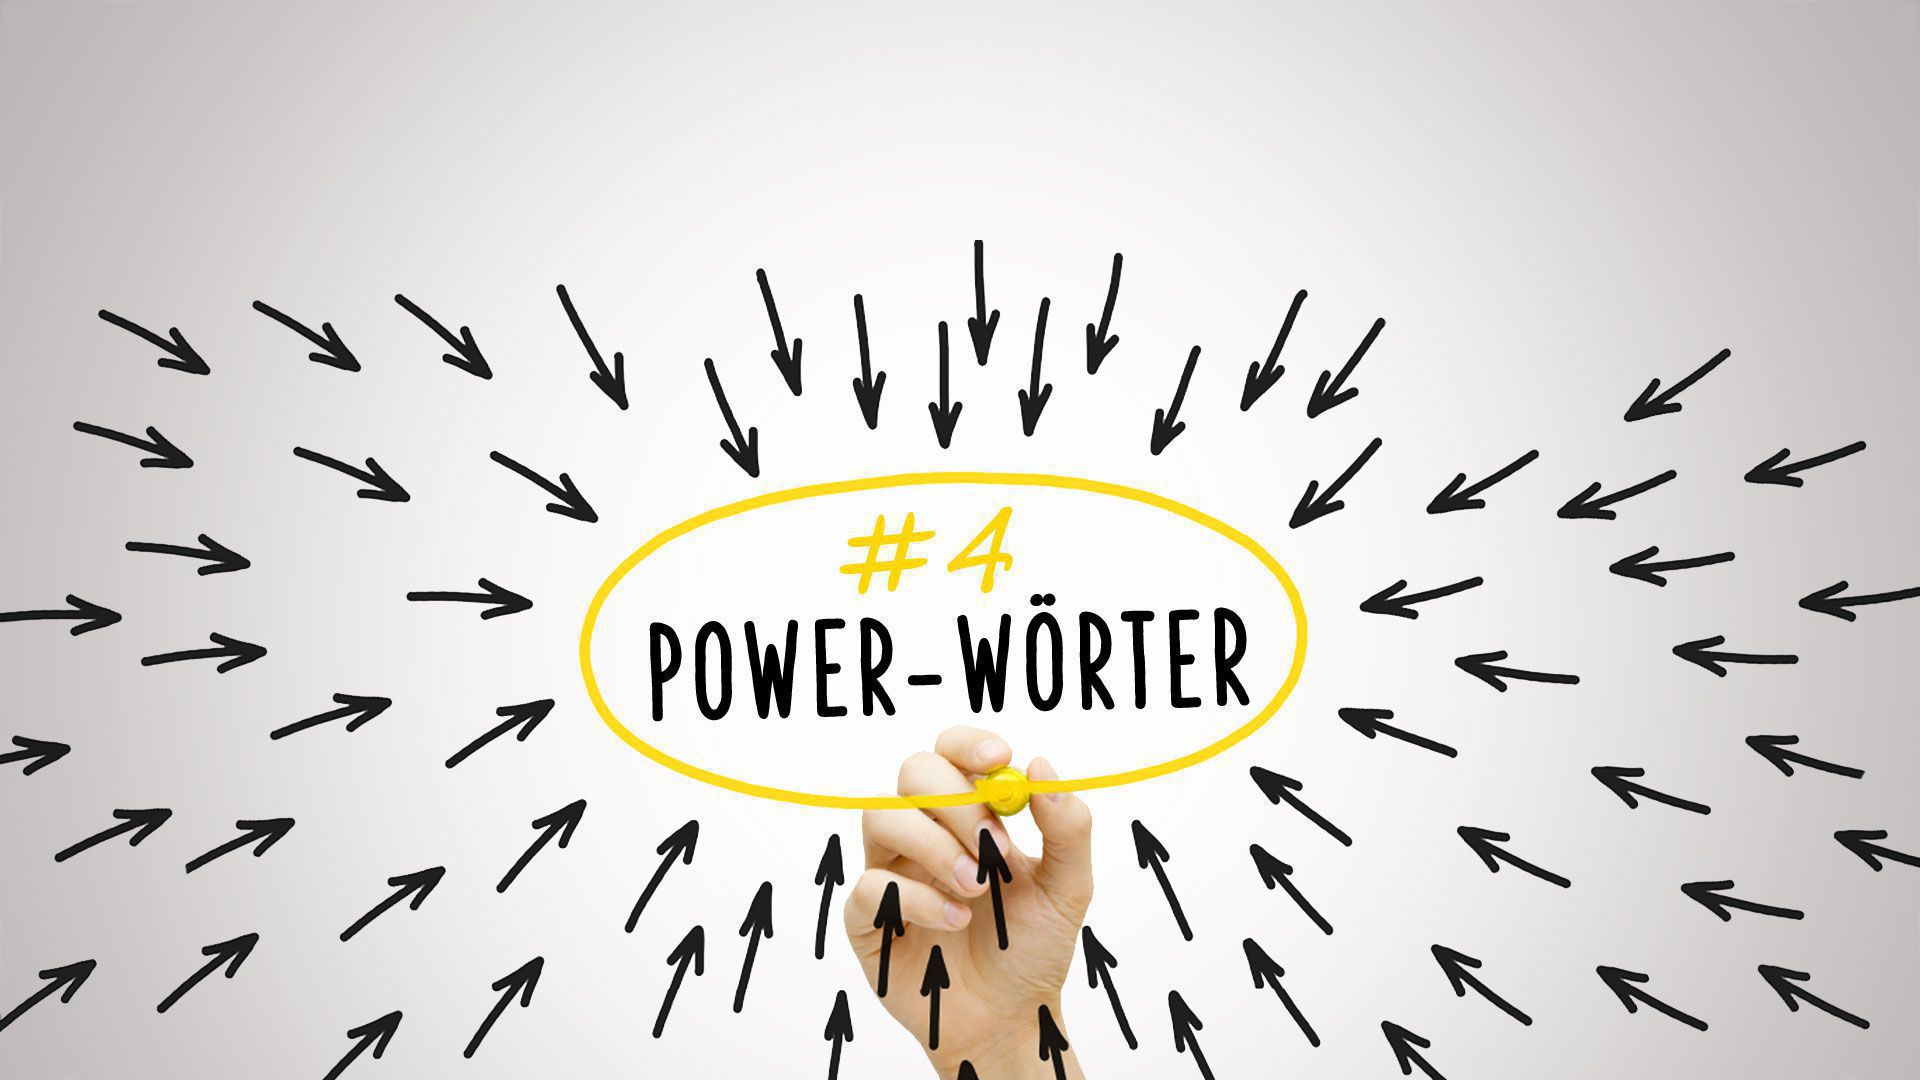 jkt-powerwoerter4 Verkauf To Go - Sprachmodelle beherrschen mit Power Wörter Teil 4-Master-Level